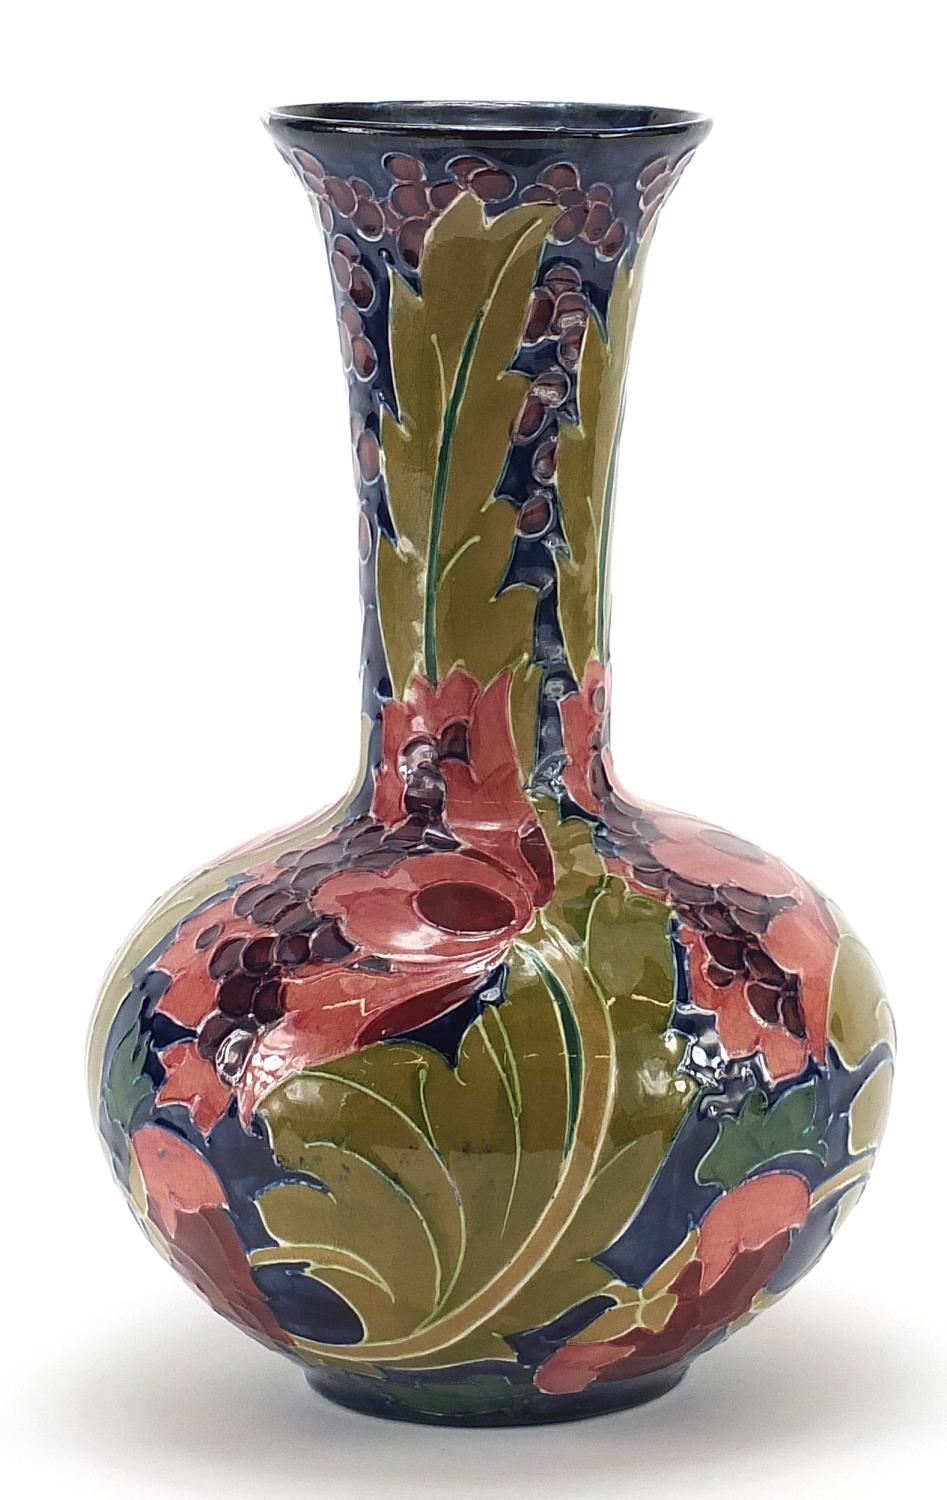 Charlotte Reid for Bursley Ware, Seed Poppy pattern vase, 28cm high